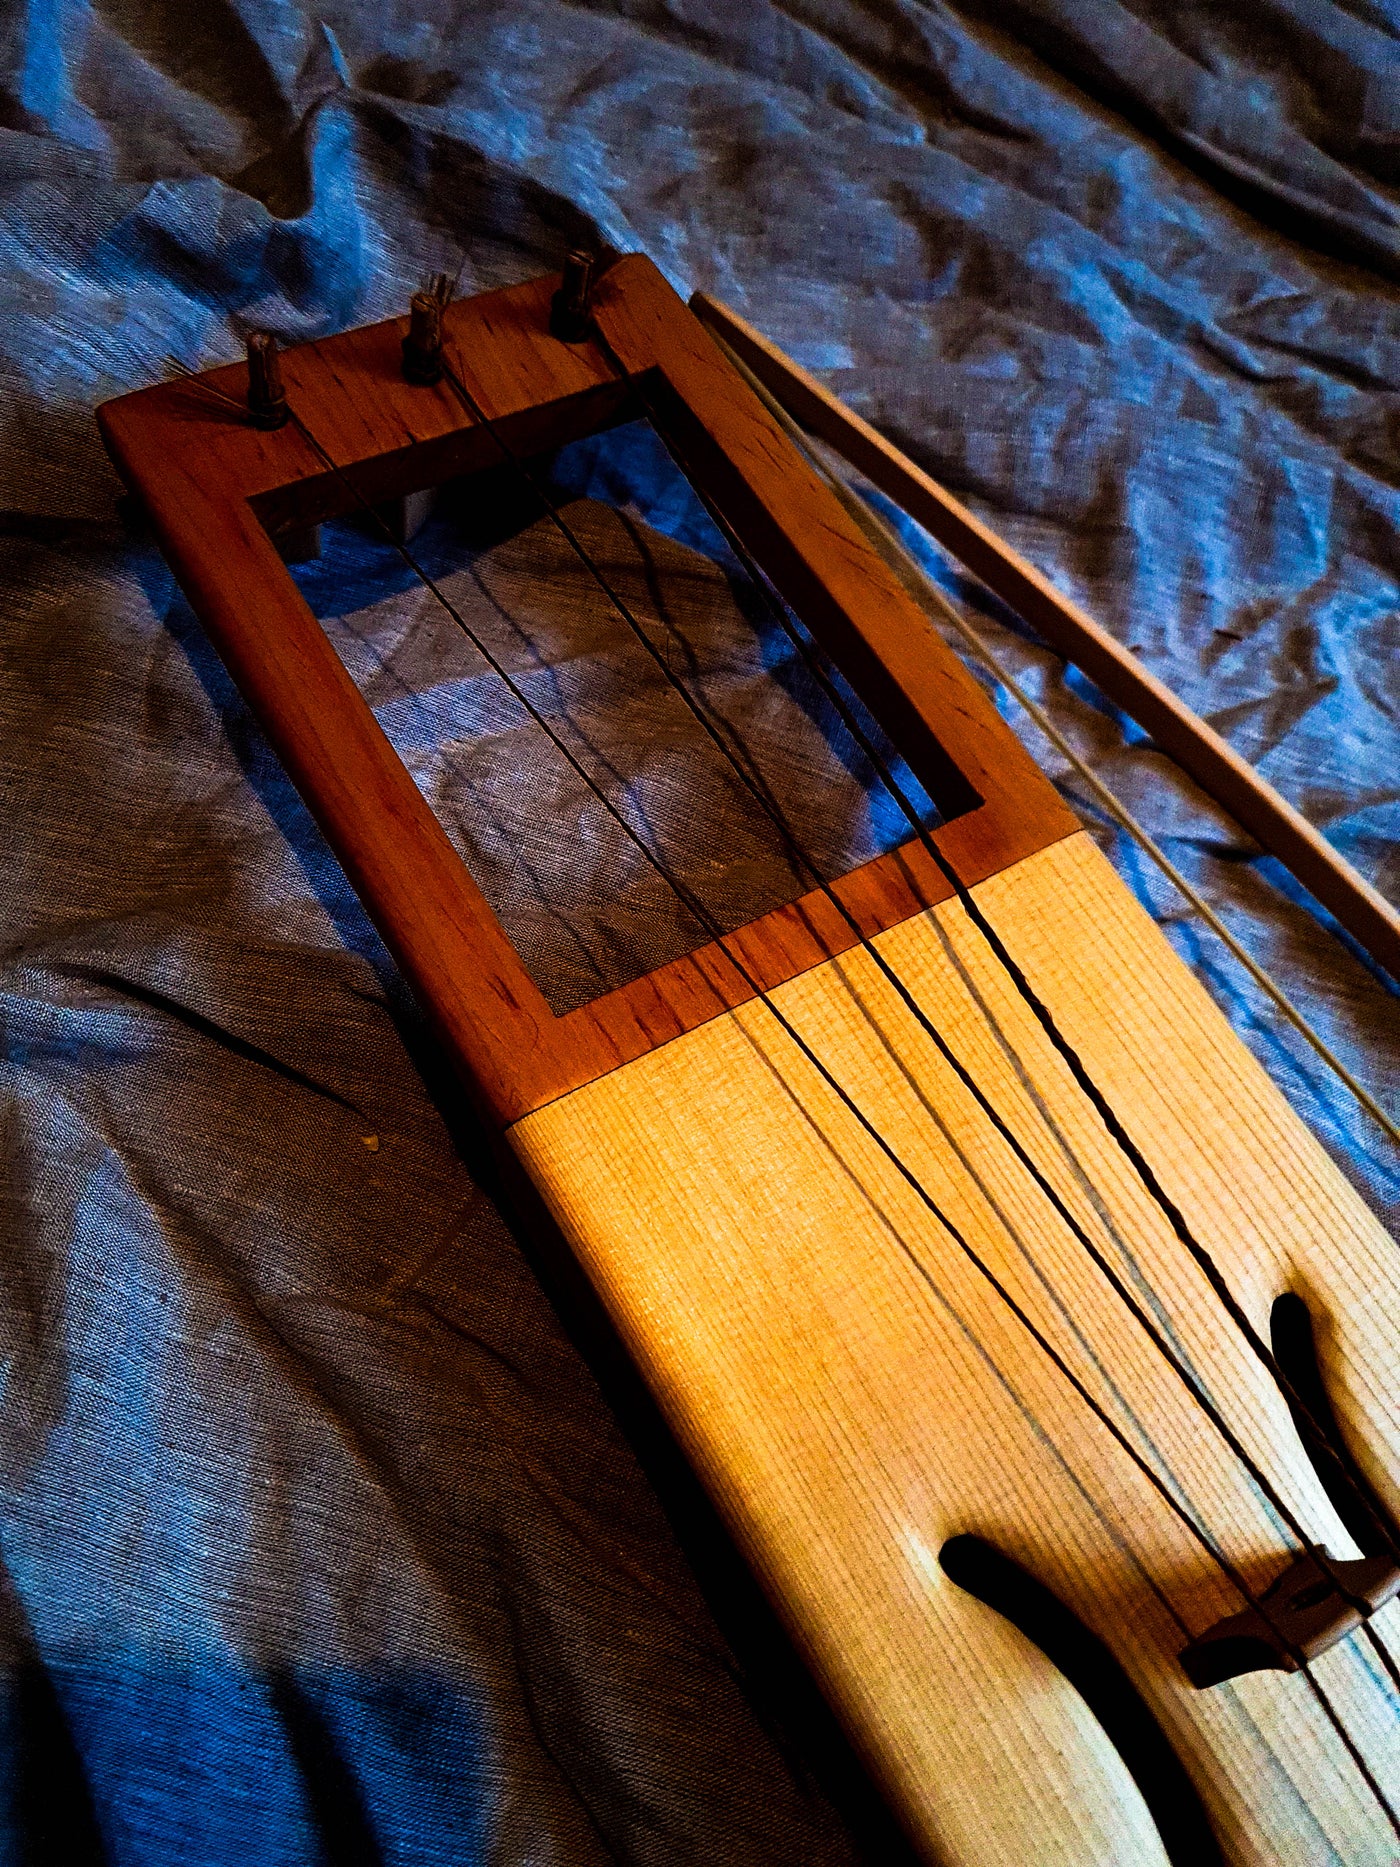 Tagelharpa, 3 Strings